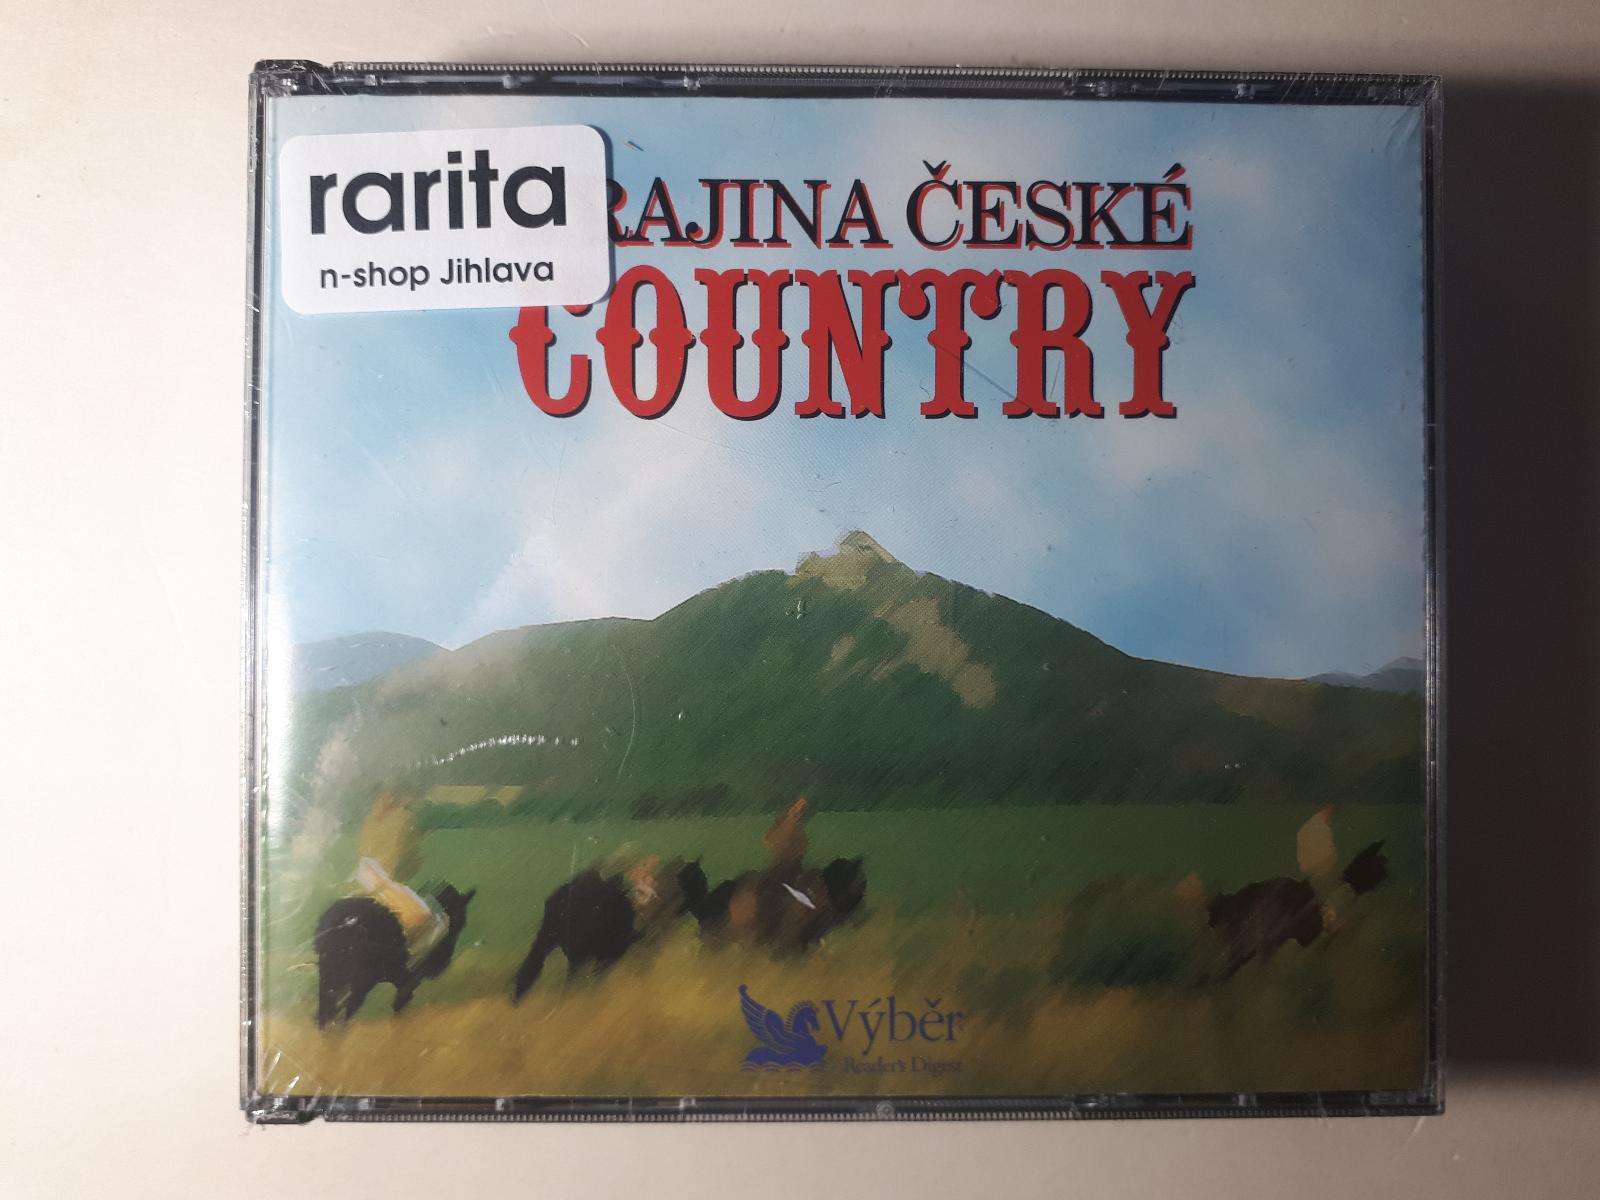 Krajina české Country - Hudba